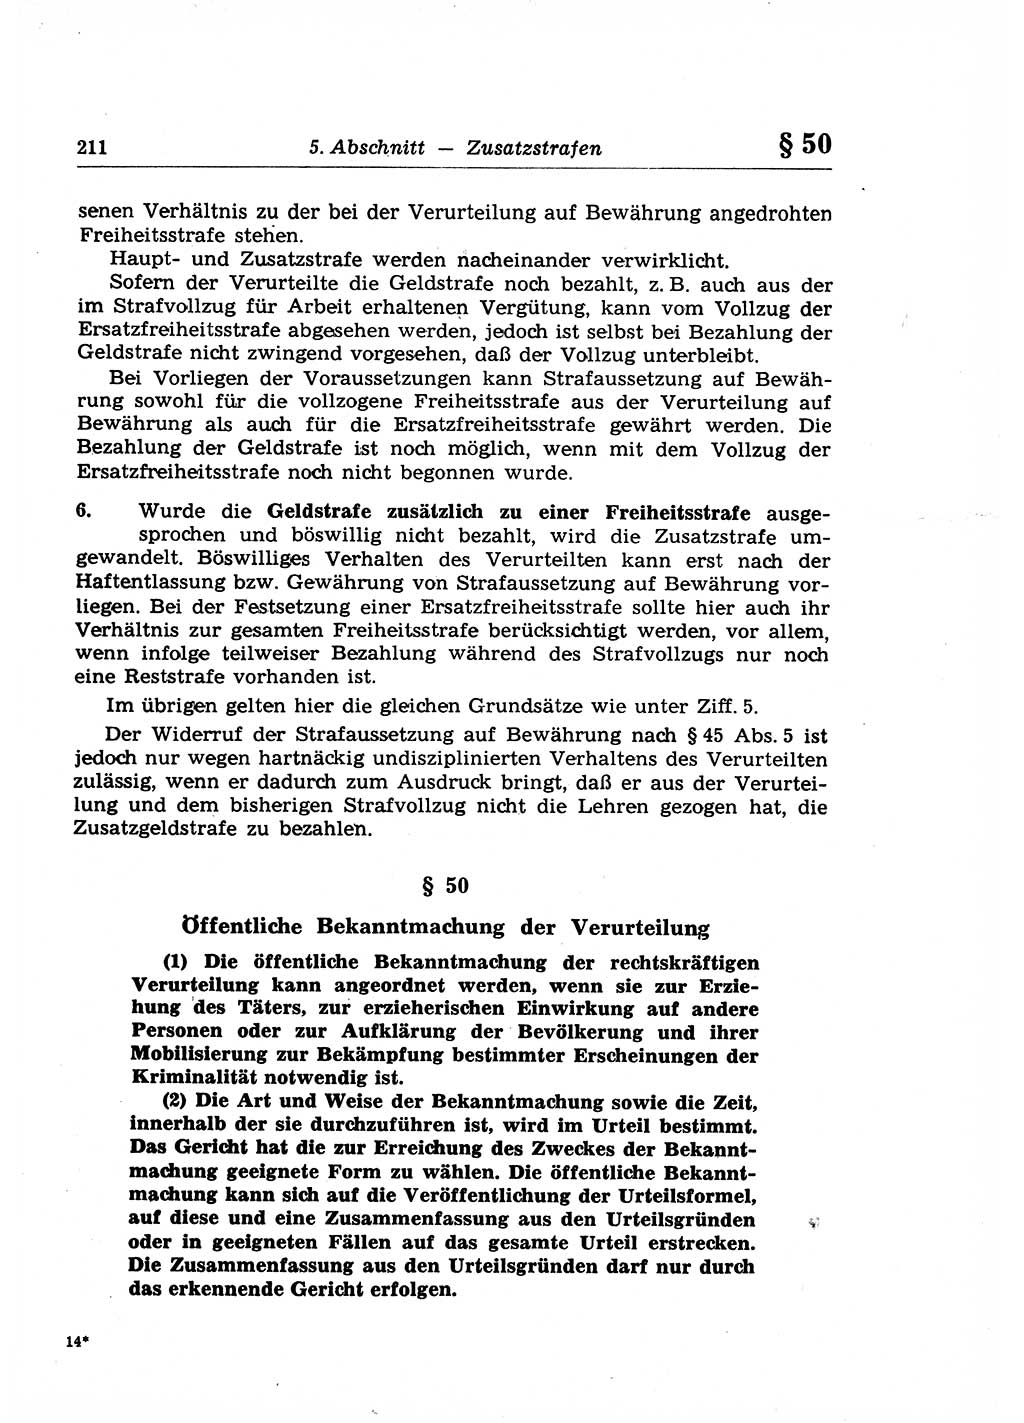 Strafrecht der Deutschen Demokratischen Republik (DDR), Lehrkommentar zum Strafgesetzbuch (StGB), Allgemeiner Teil 1969, Seite 211 (Strafr. DDR Lehrkomm. StGB AT 1969, S. 211)